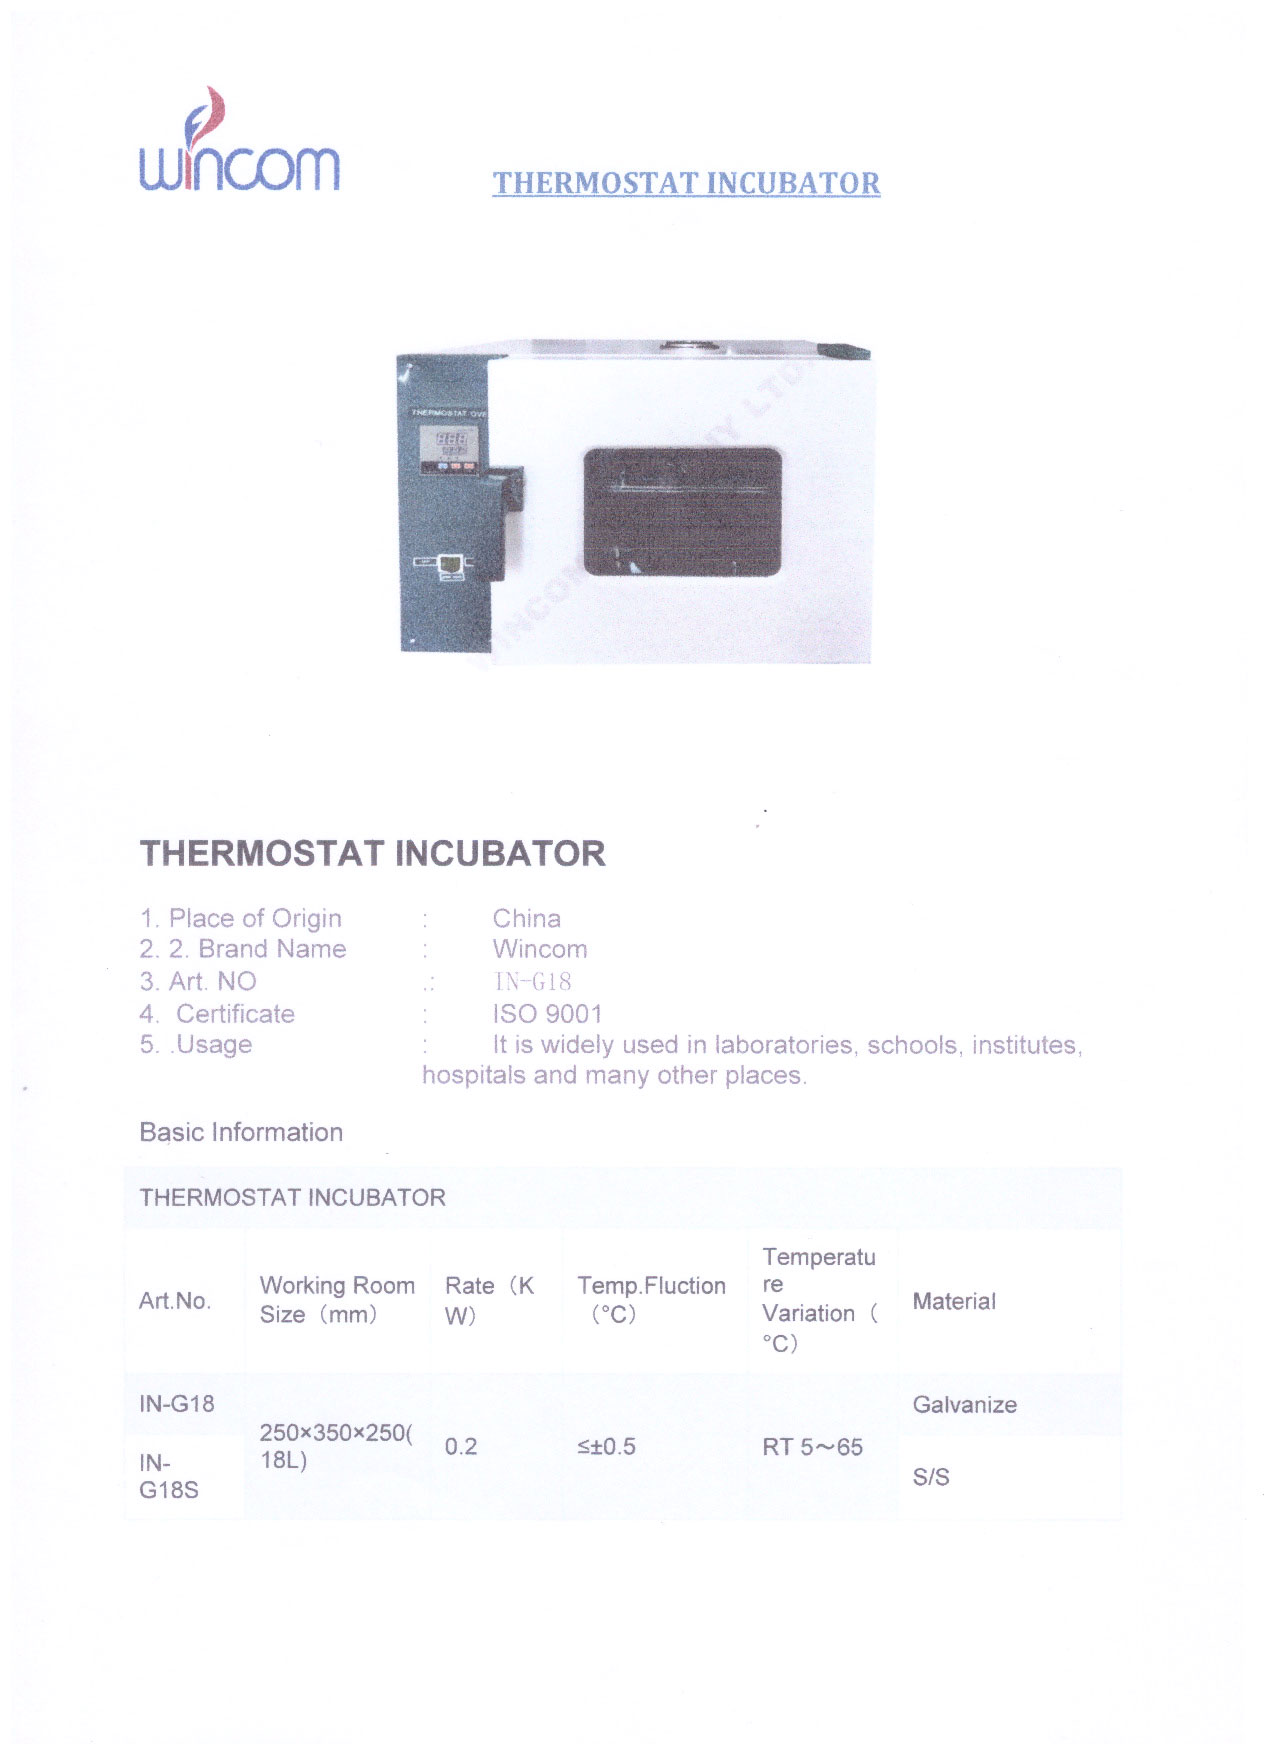 18L Laboratory Thermostat Incubator in-G18